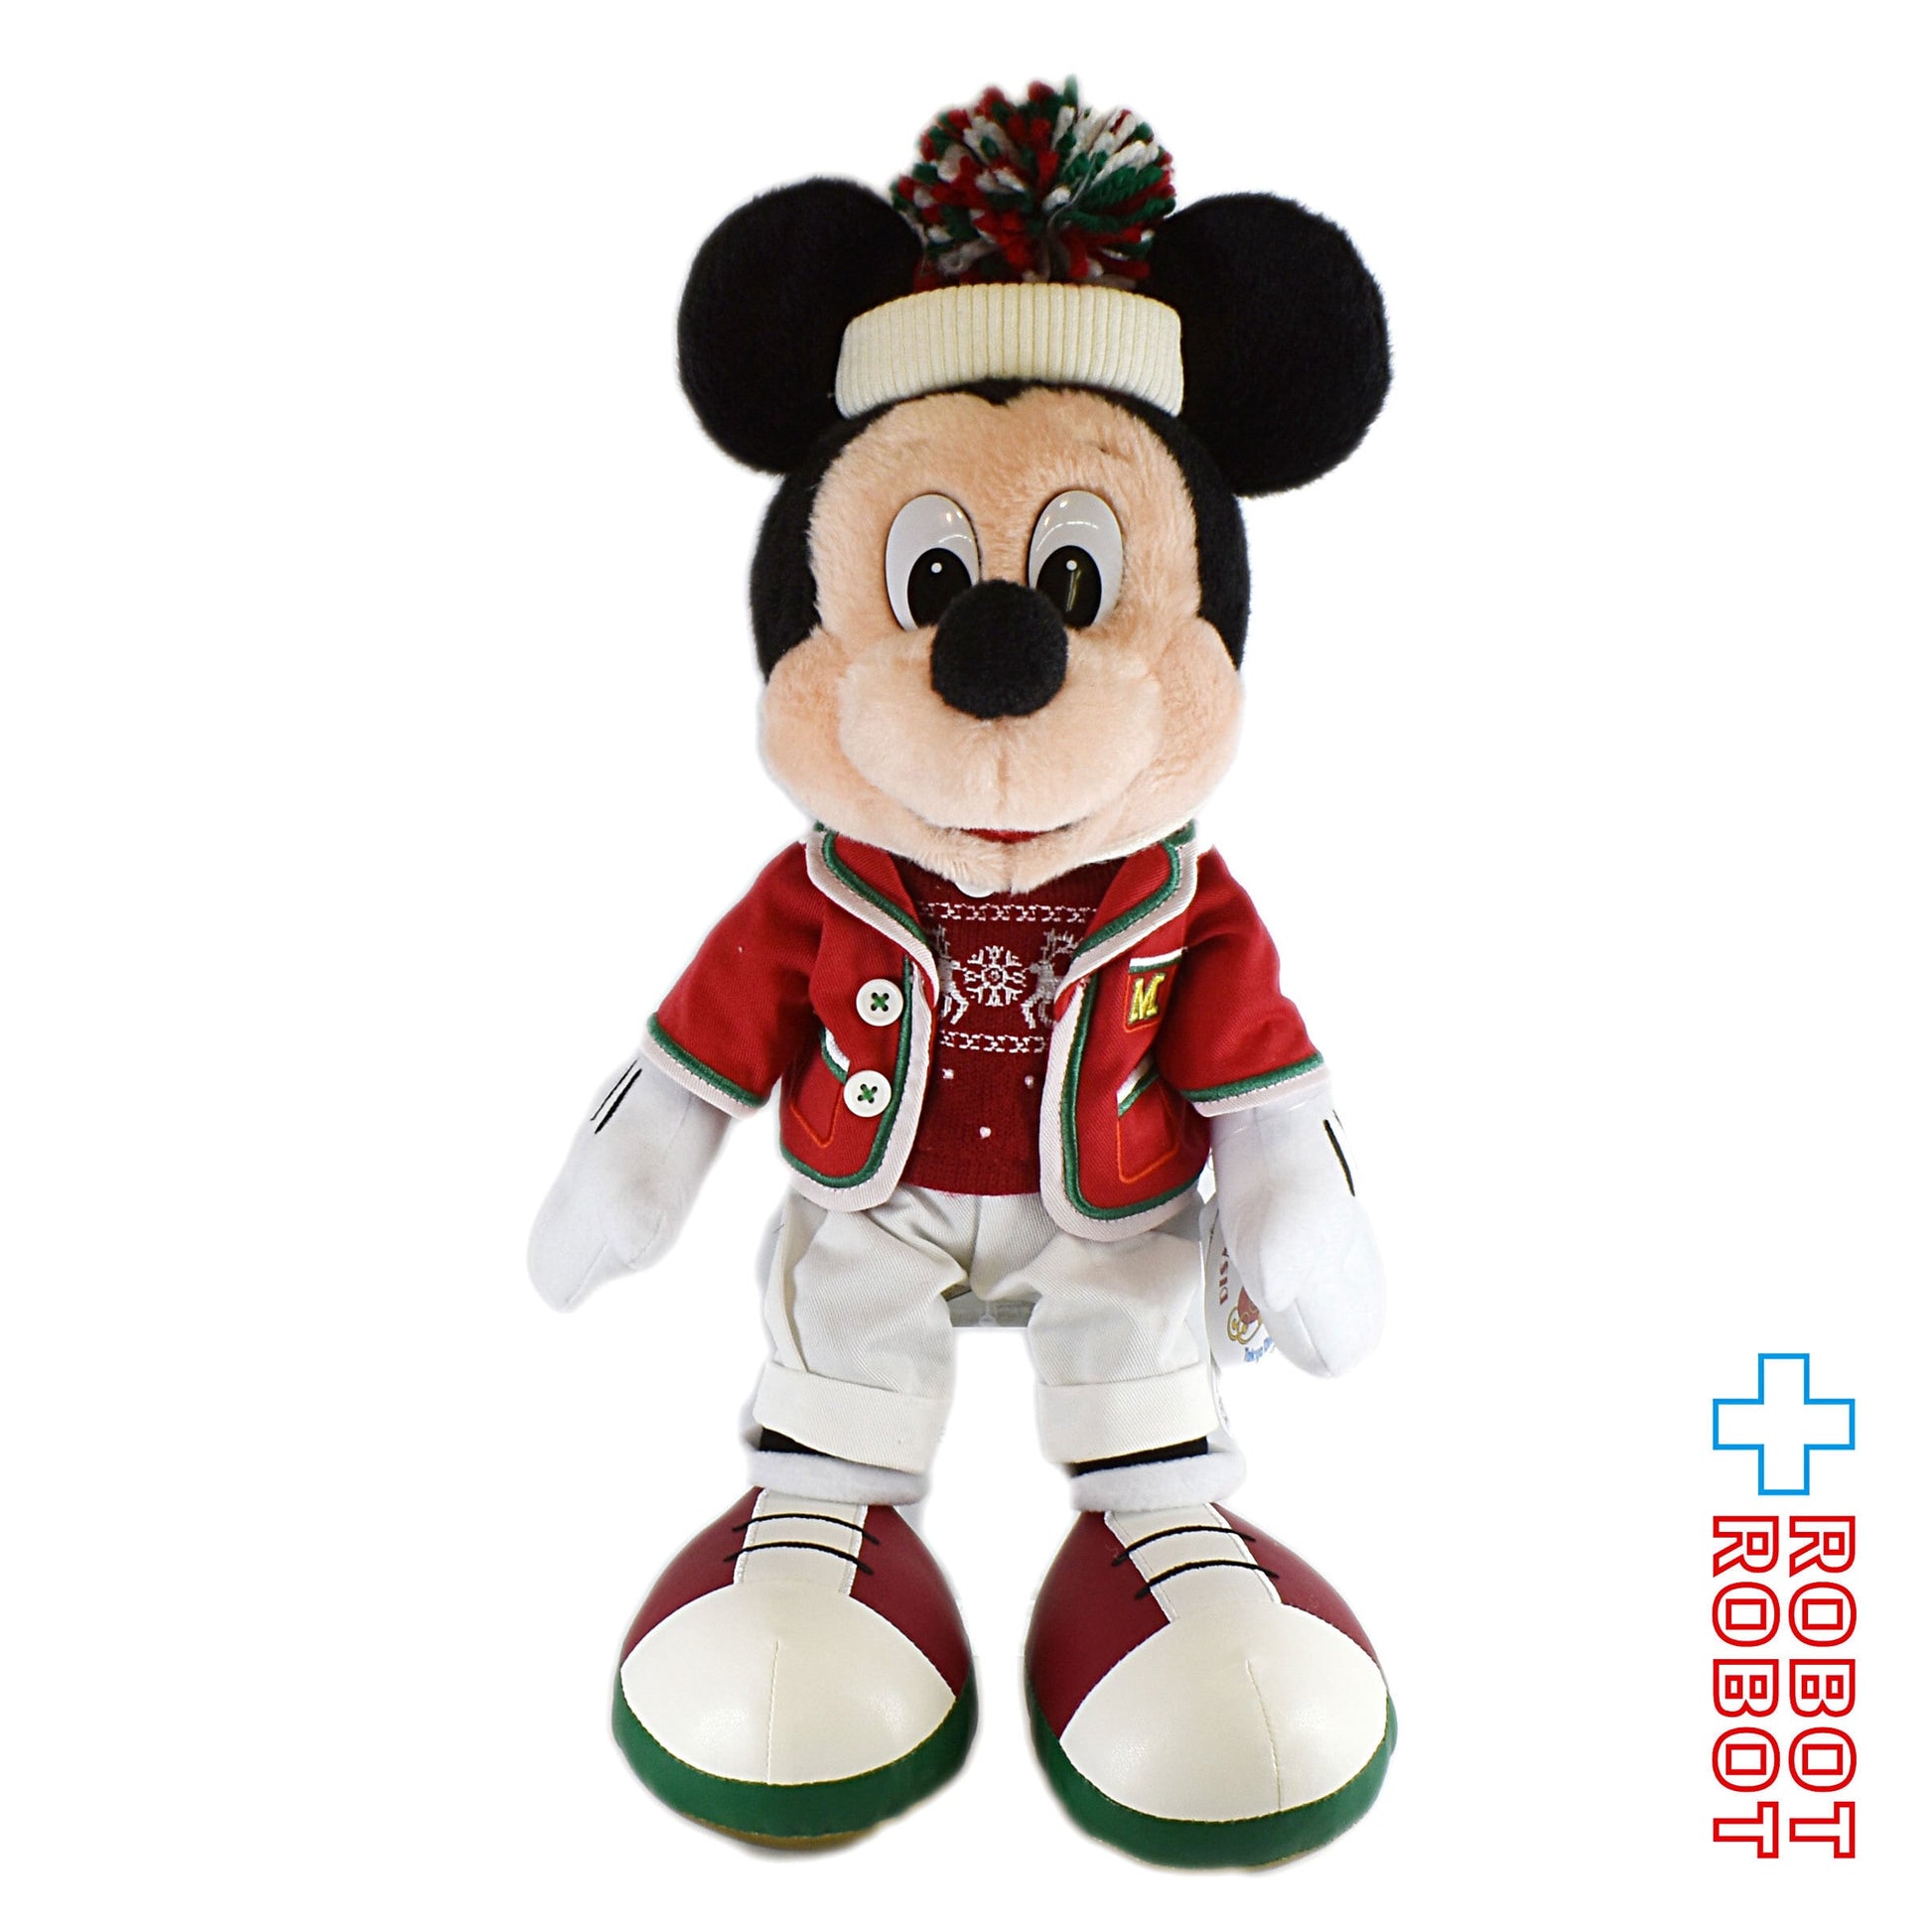 東京ディズニーランド 2019 ディズニー・クリスマス ミッキーマウス ぬいぐるみ レトロ